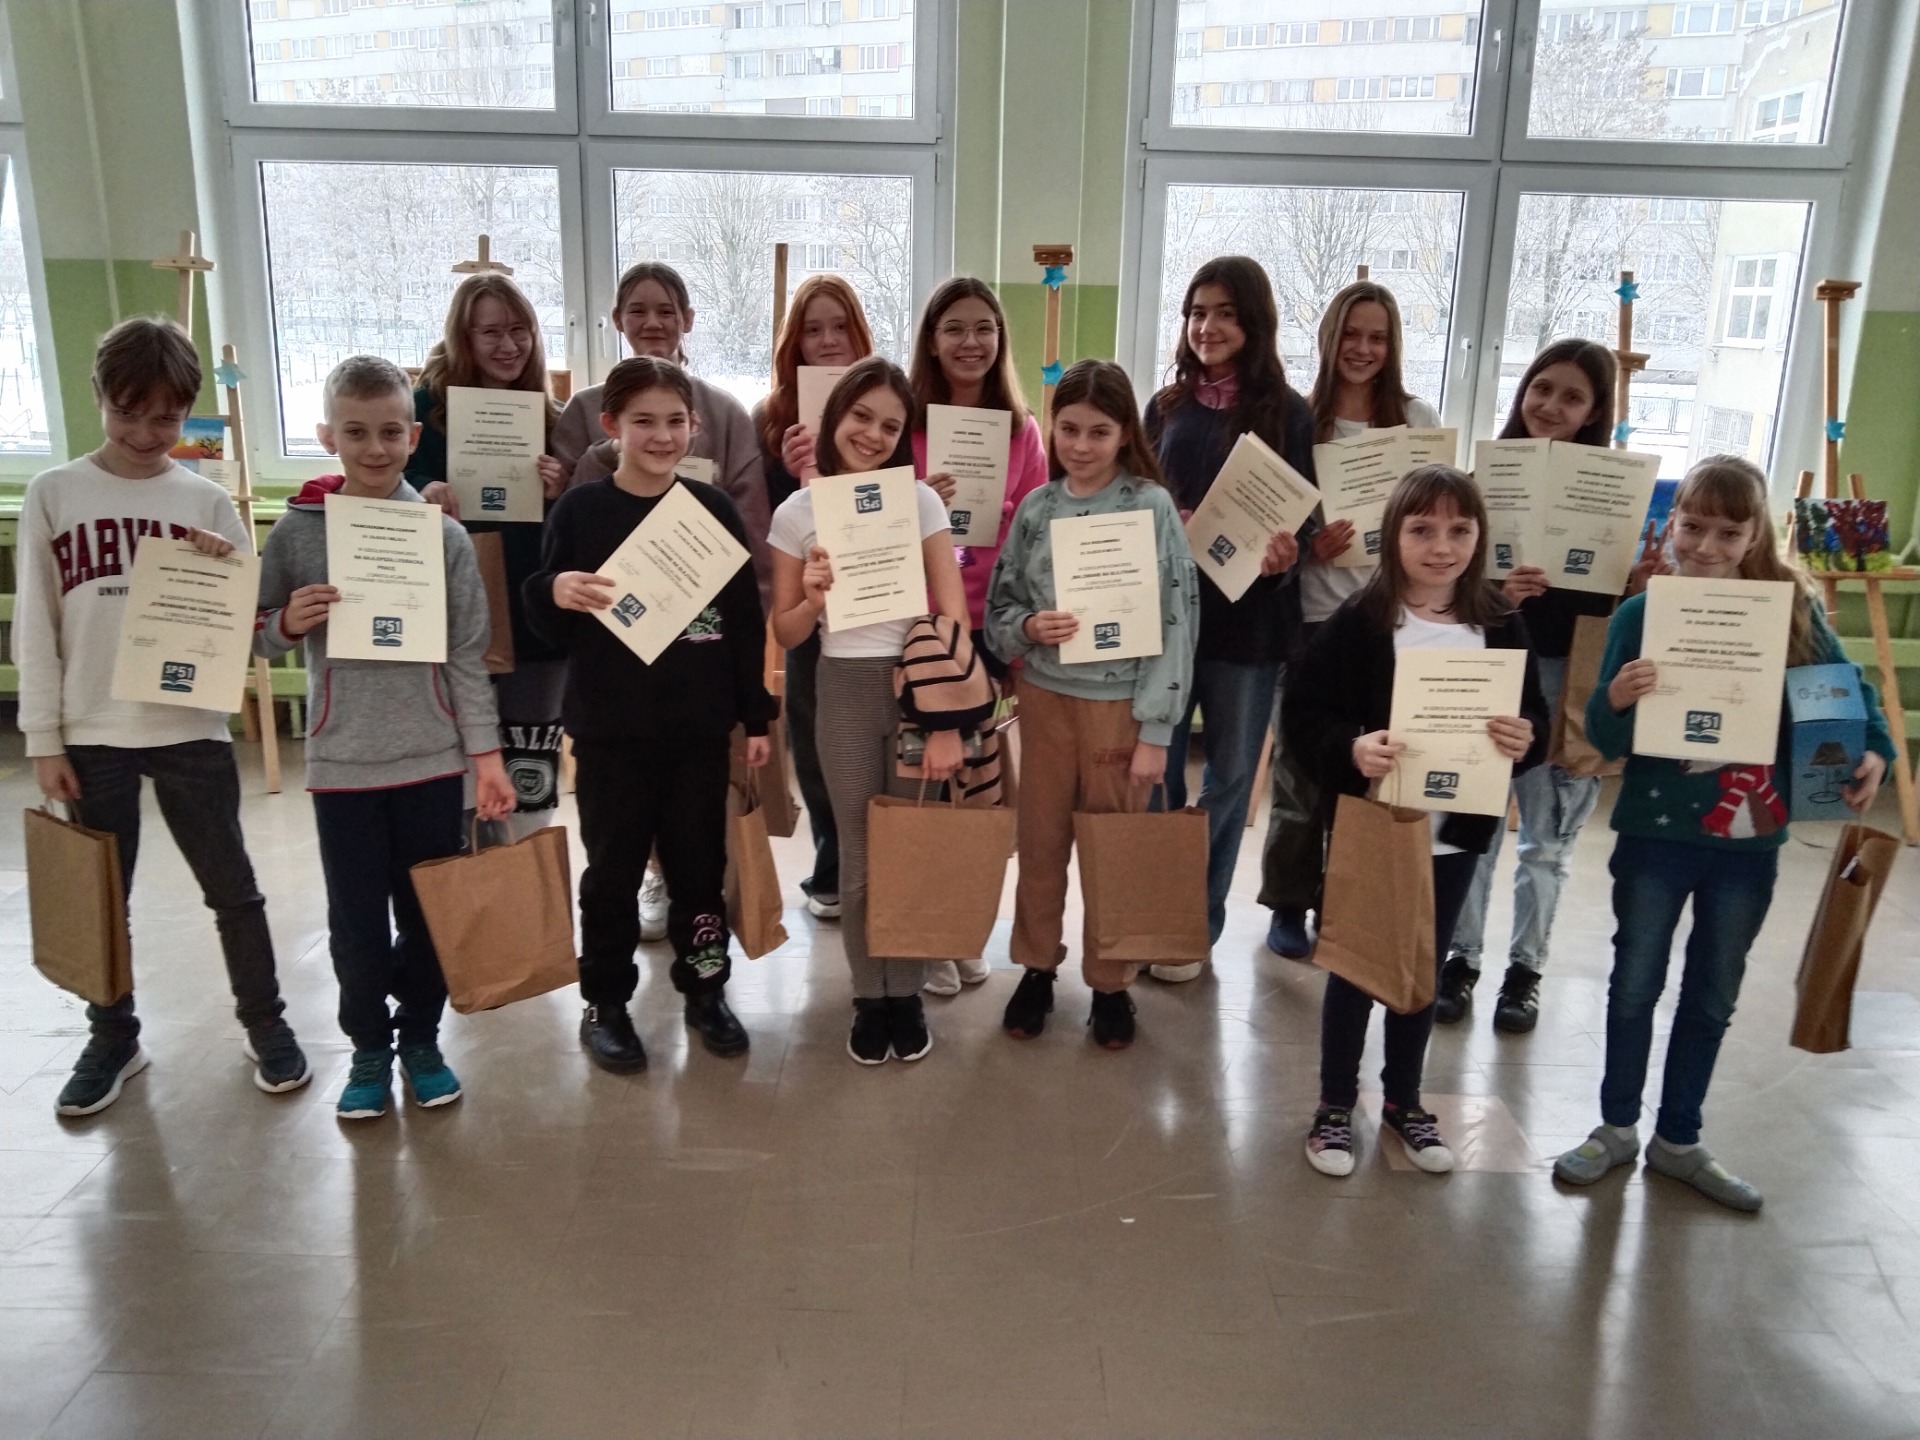 grupa uczniów stojąca na szkolnym korytarzu trzymająca szare torby  z nagrodami i dyplomy świadczące o sukcesach w konkursach